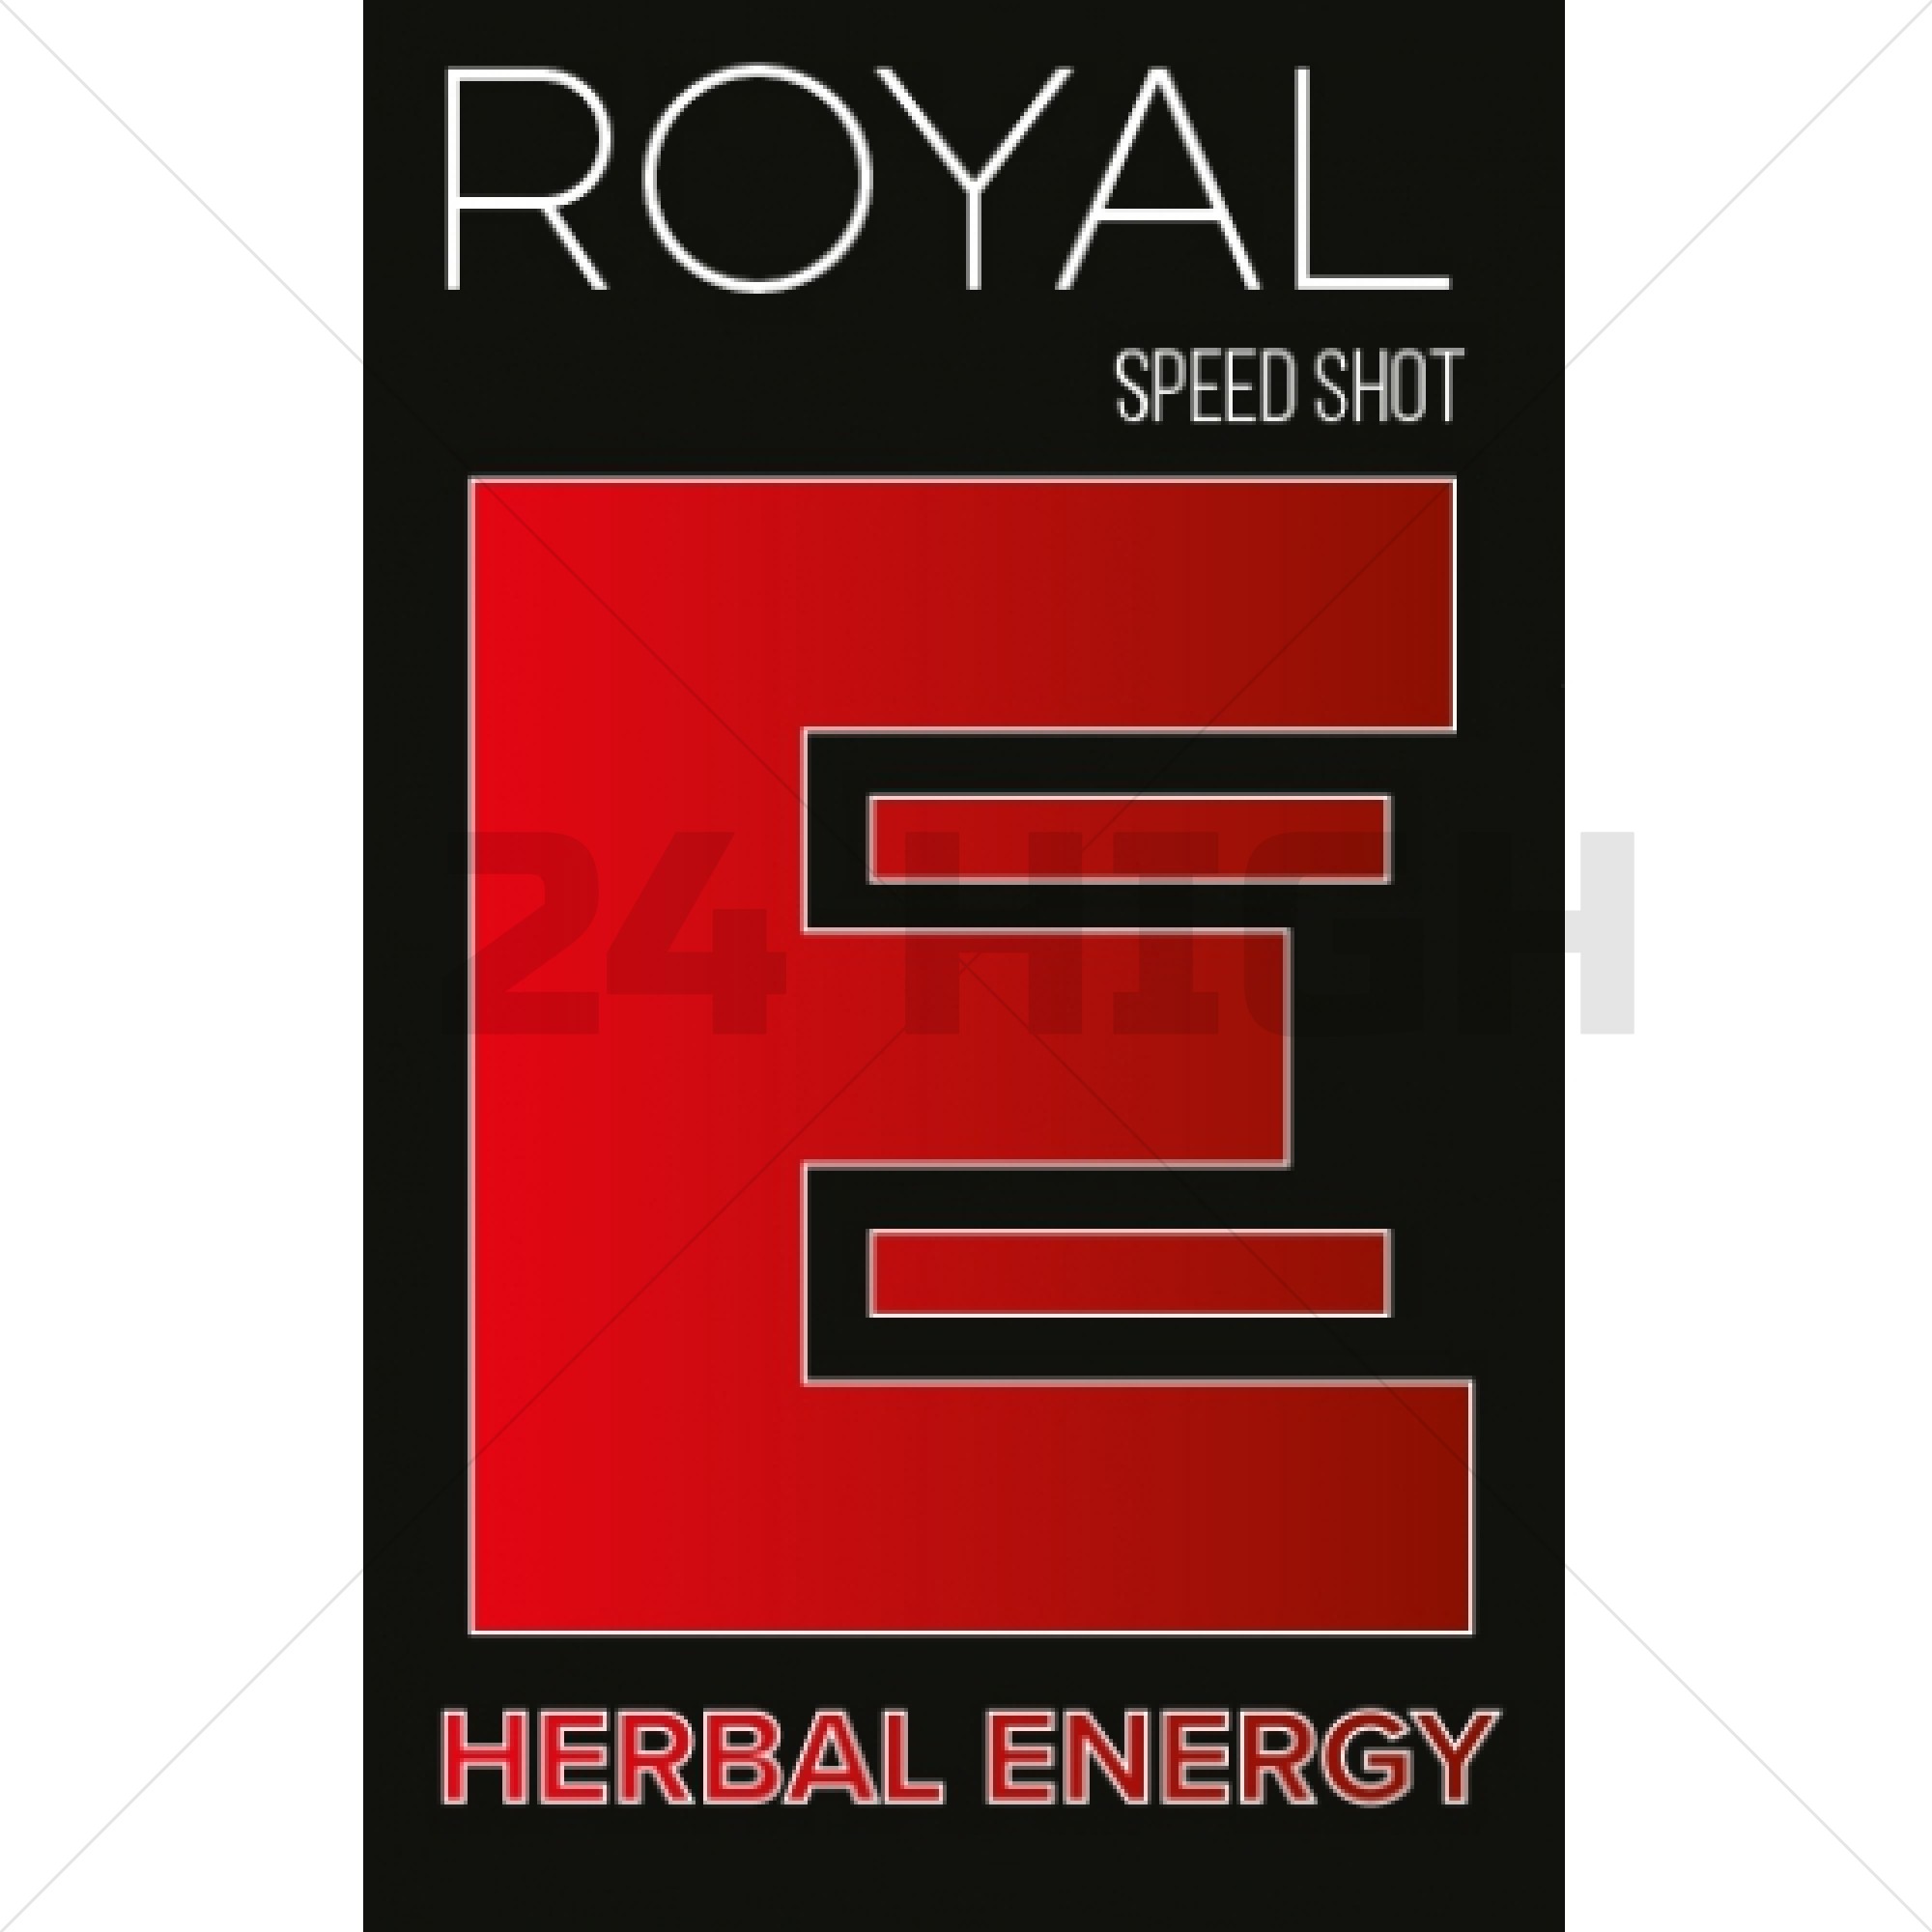 Royal Energy